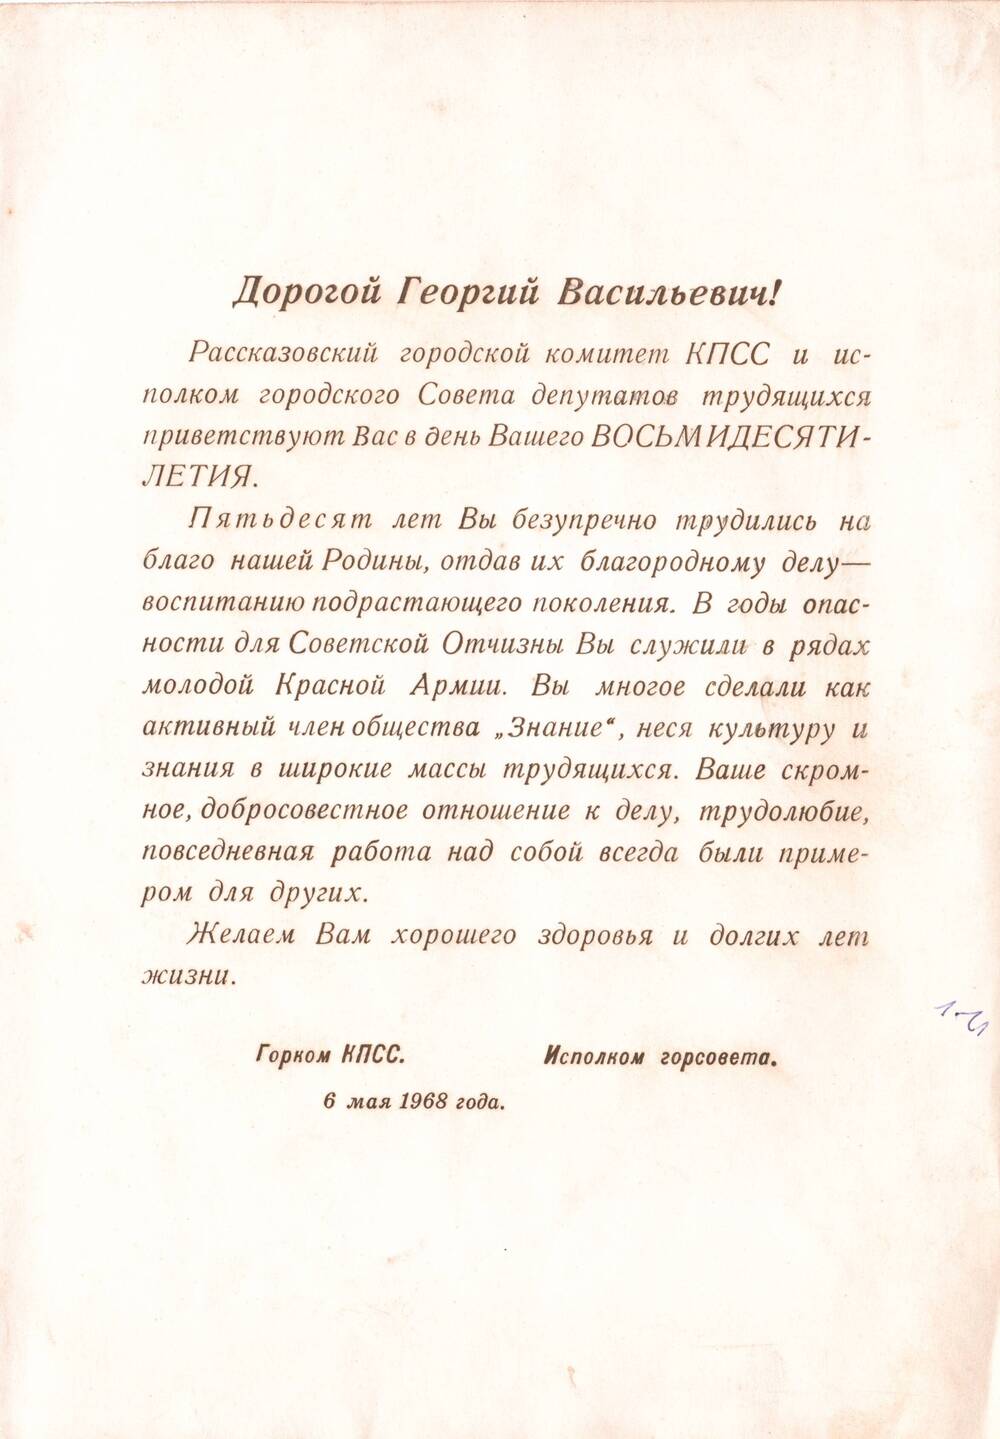 Поздравительное письмо Чепкова Георгия Васильевича